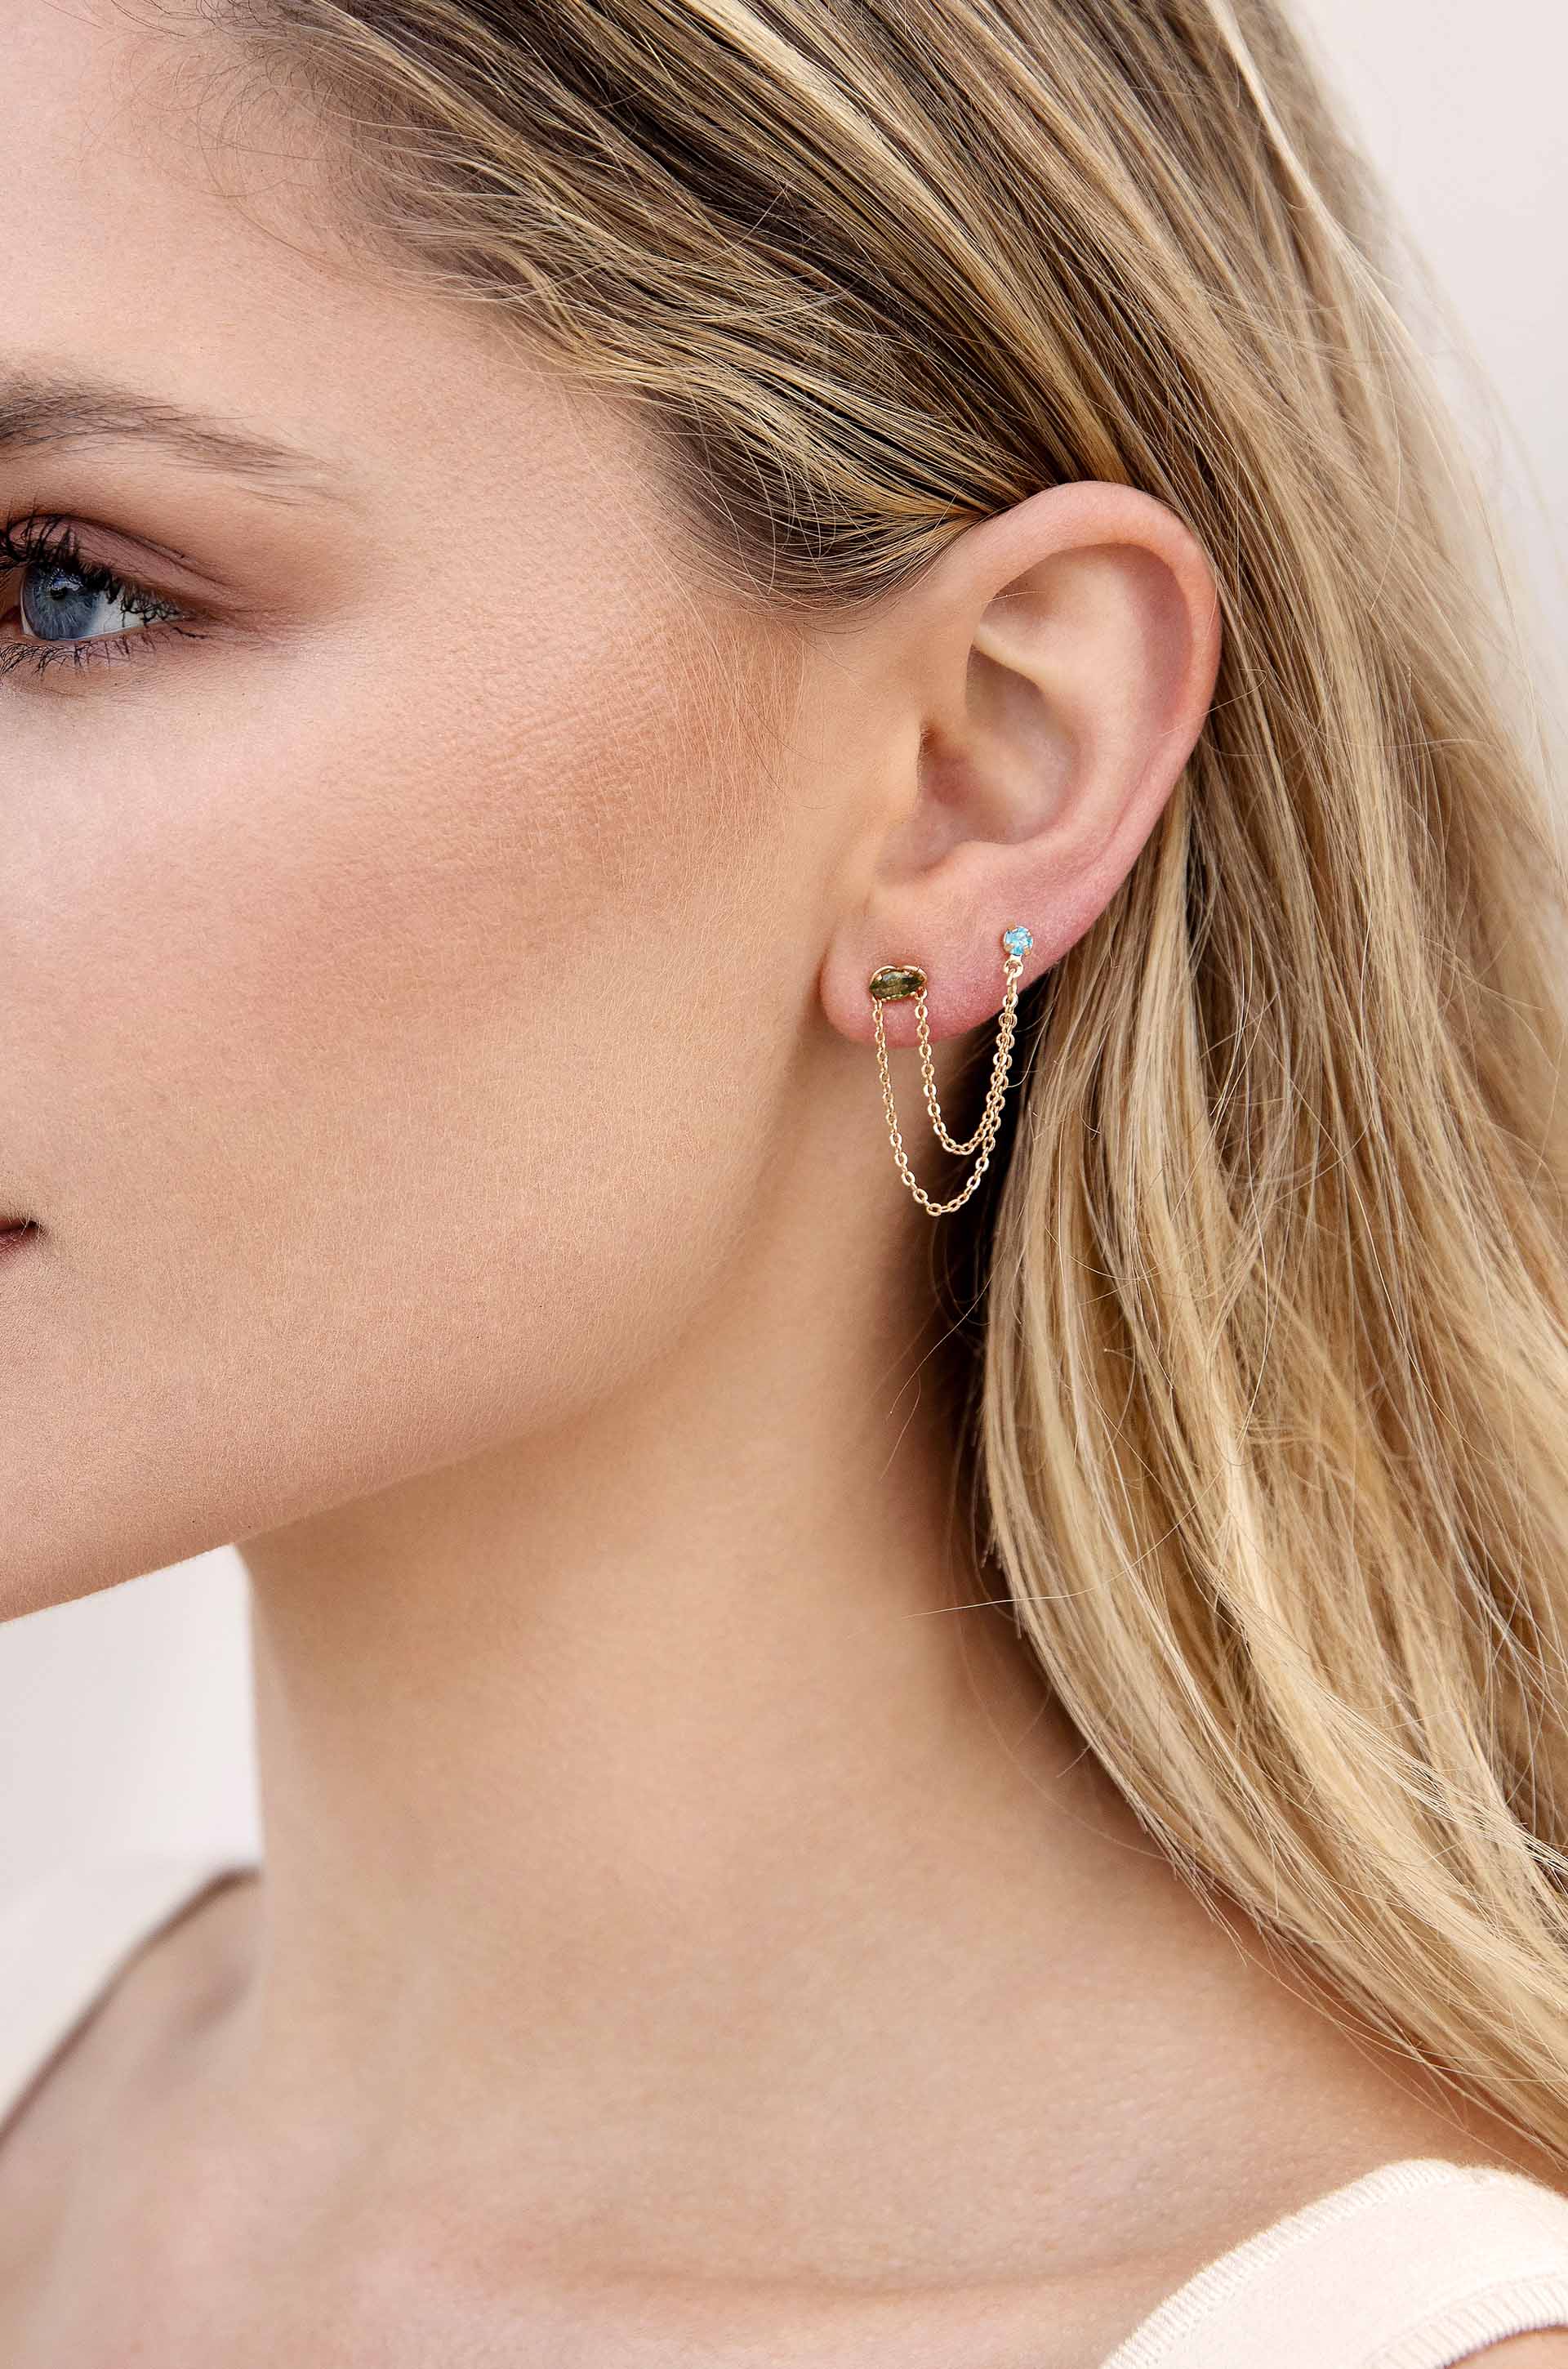 Rhinestone Chain Earrings - Two Hole Piercing Earring Ear Buckle